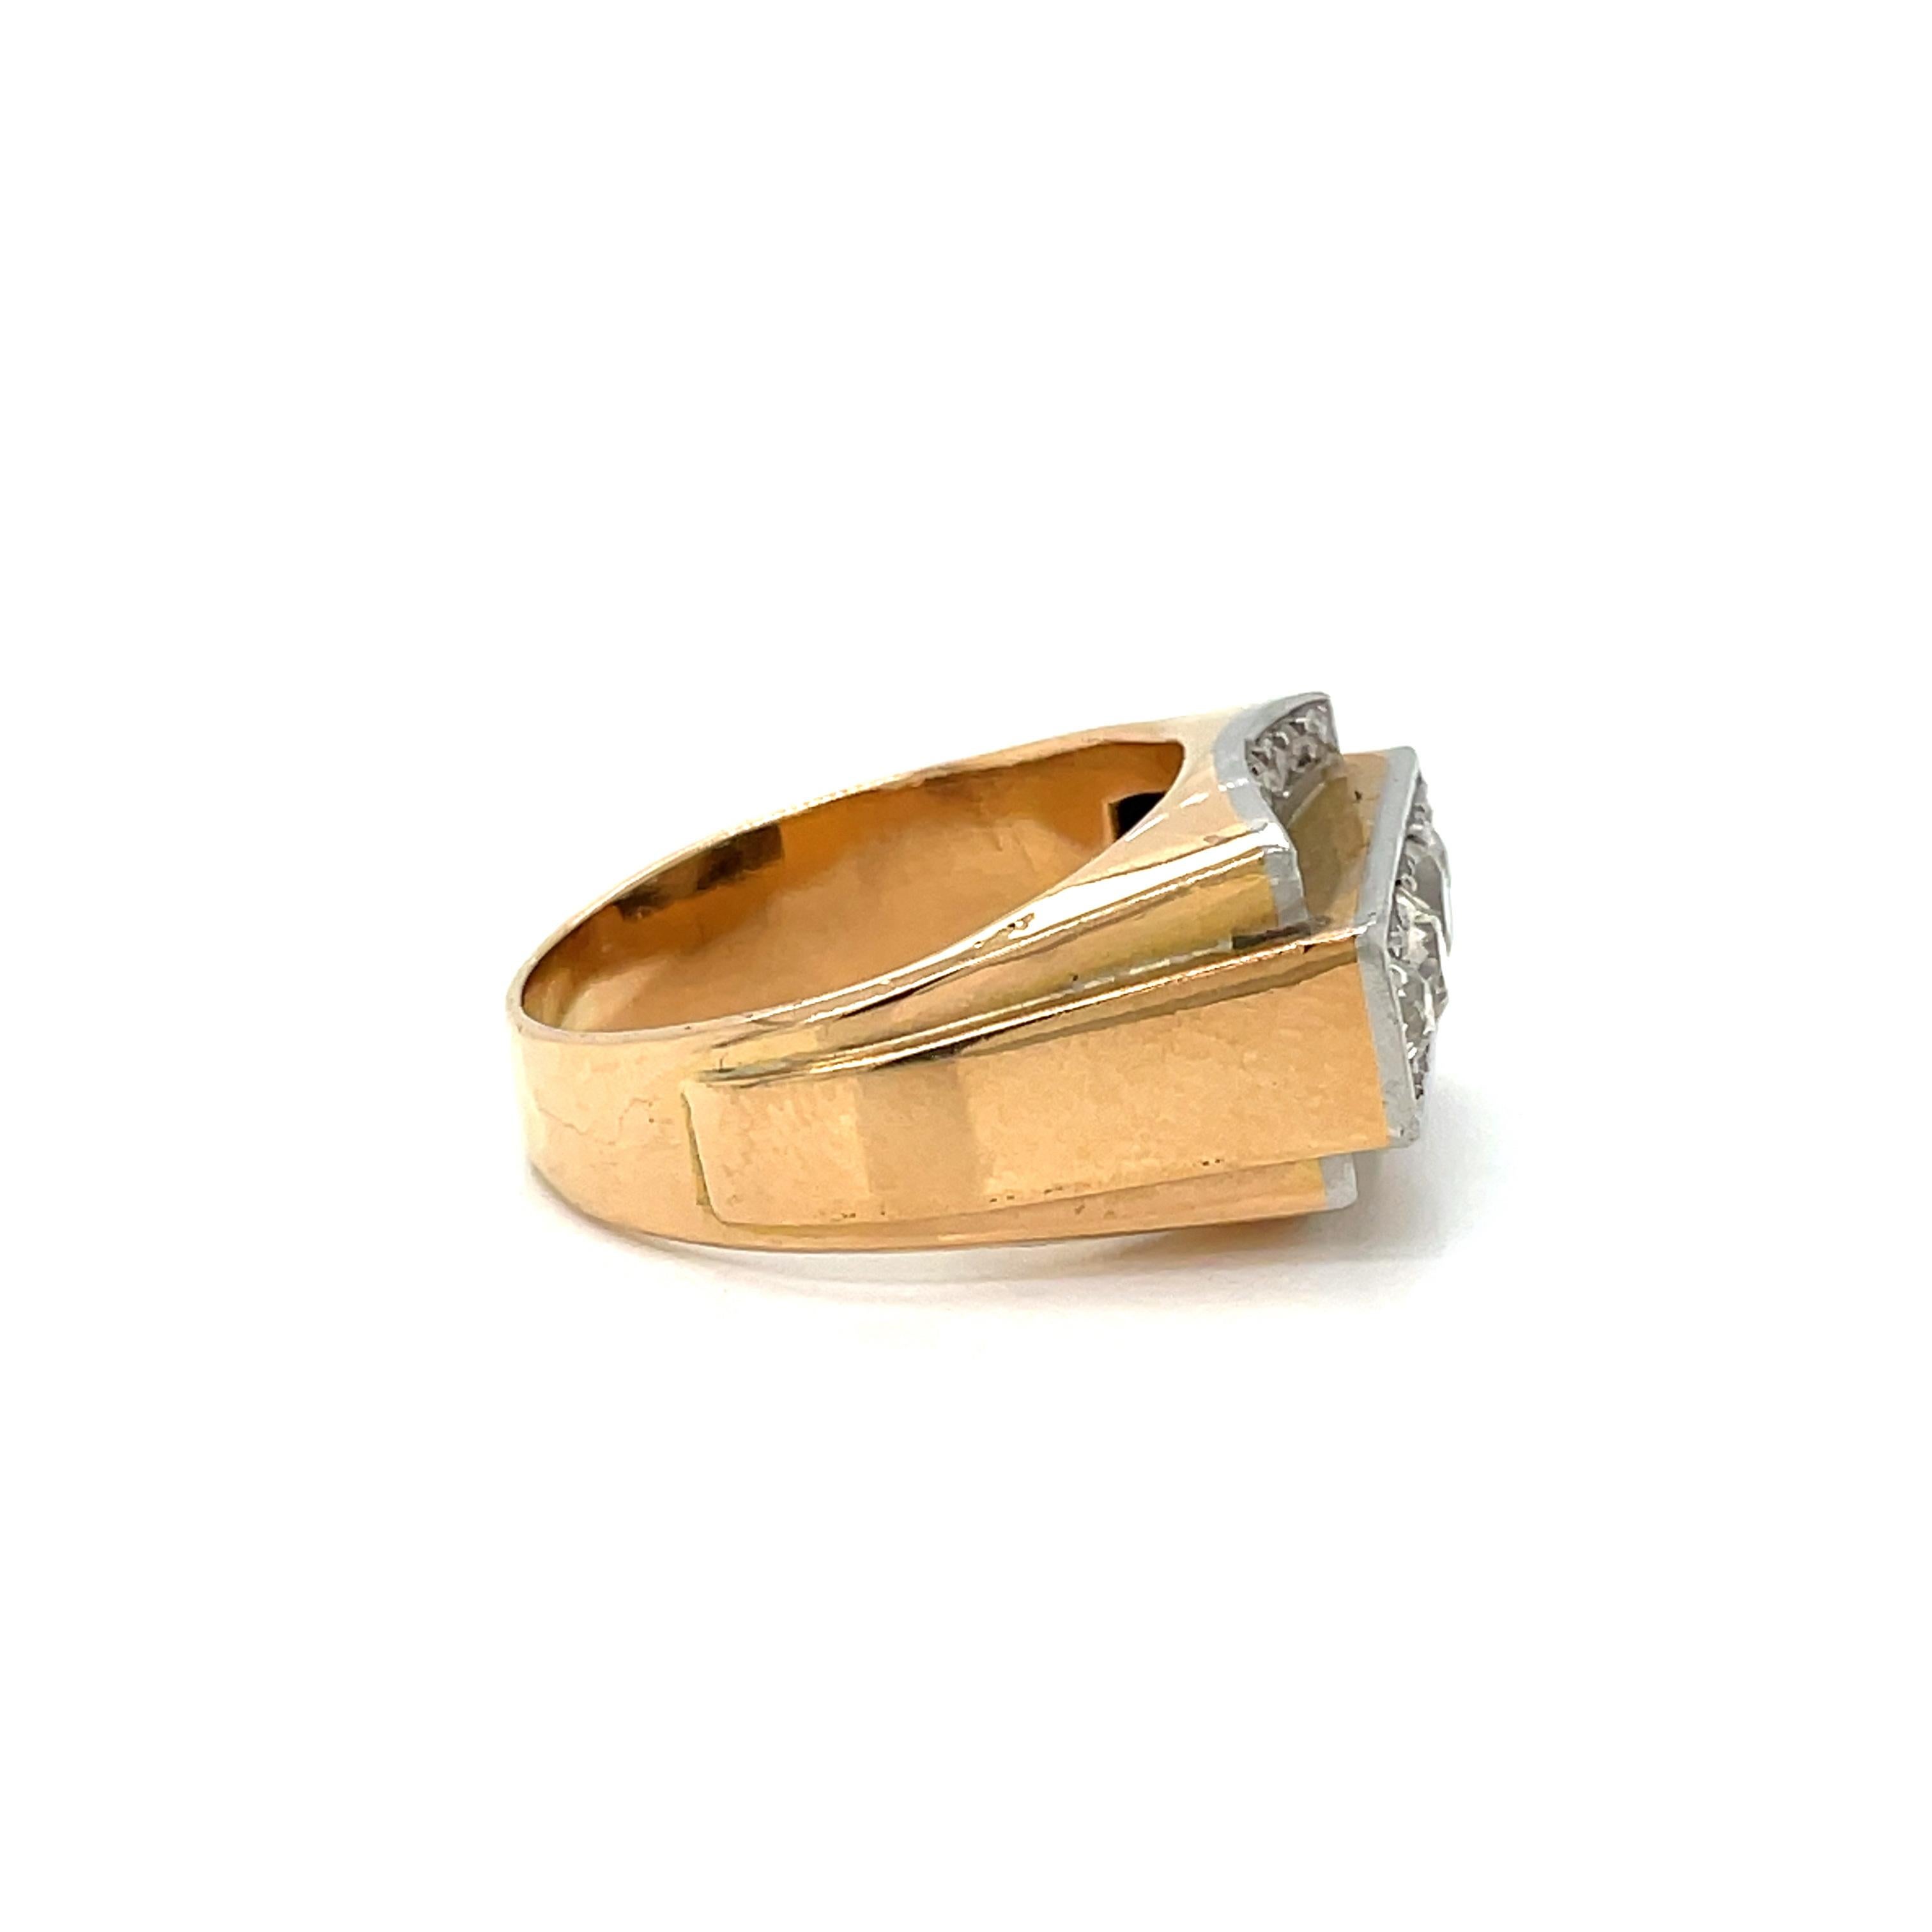 Zauberhafter handgefertigter Ring aus 18 Karat Rosé- und Weißgold.

Er stammt aus dem Jahr 1930 und ist mit ca. 1,30 Karat Diamanten im Old-Mine-Schliff (Farbe G/H, Reinheit Vs1) besetzt, die in drei Weißgoldreihen eingefasst sind.

ZUSTAND: